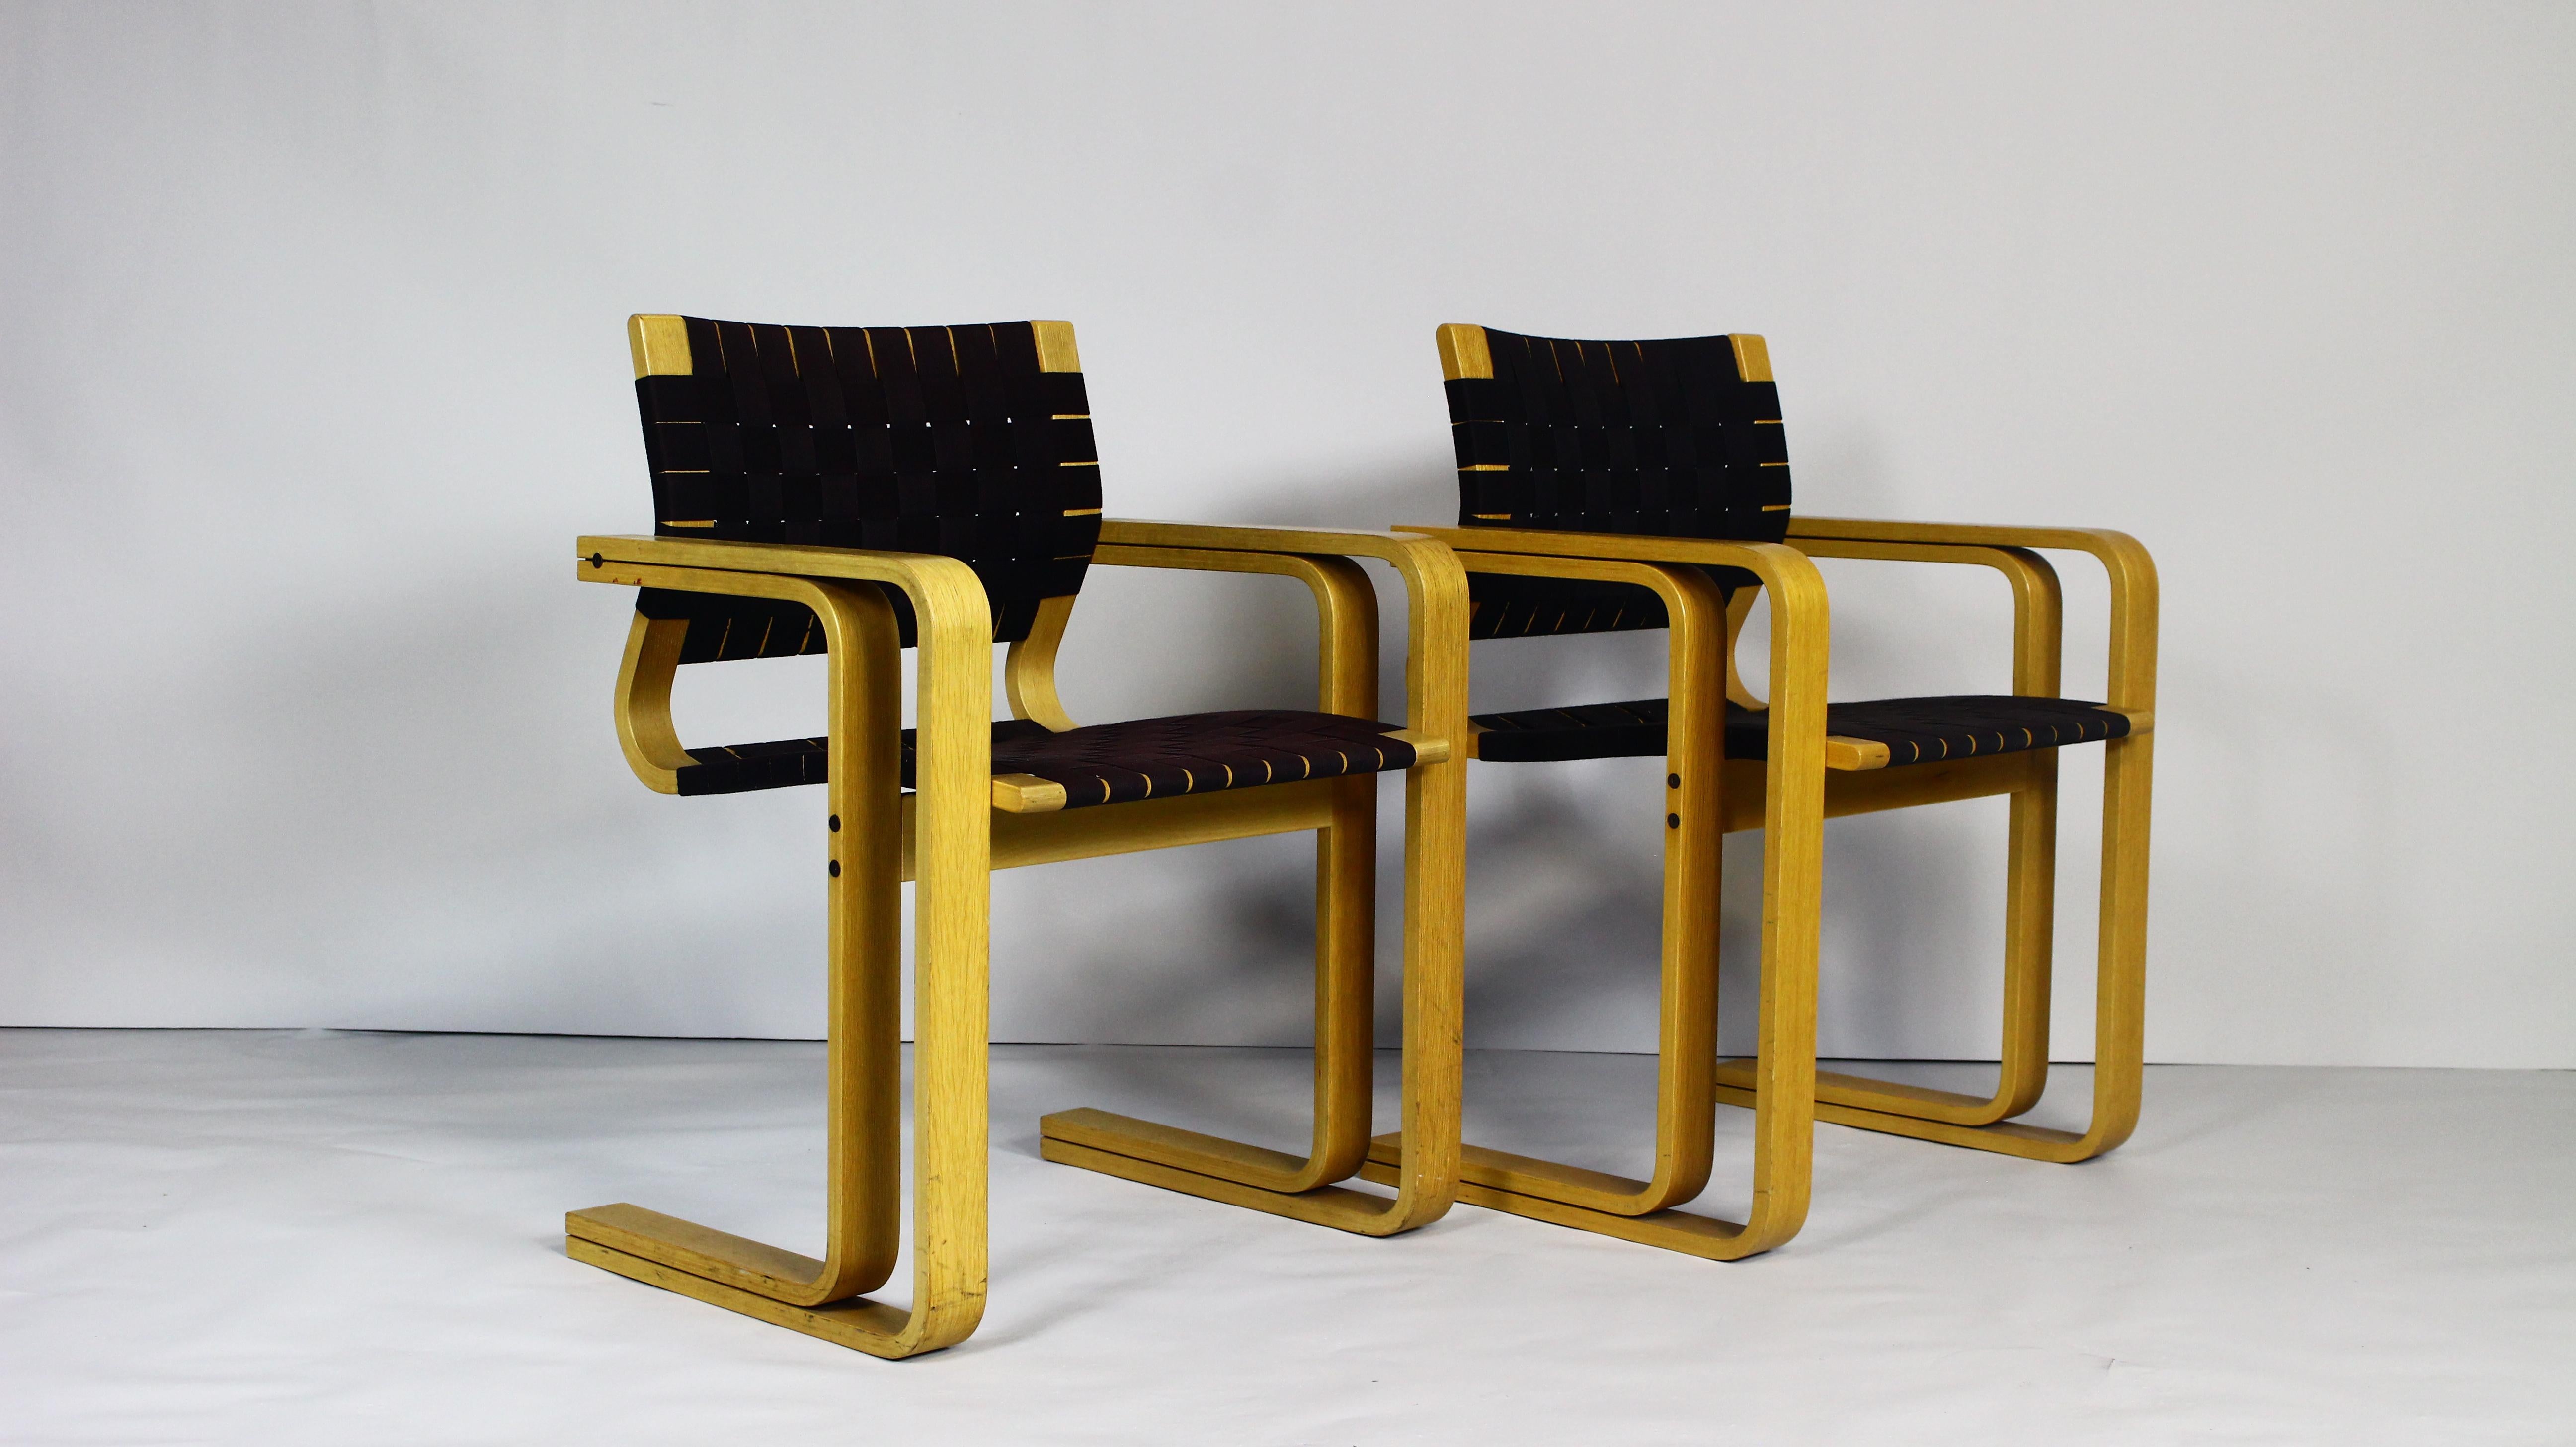 Ce fauteuil rare, modèle 5331, a été conçu par Rud Thygesen & Johnny Sorensen et produit au Danemark par Magnus Olensen dans les années 1970.
Il est composé de  d'une structure en frêne massif, d'une assise et d'un dossier en sangles tressées